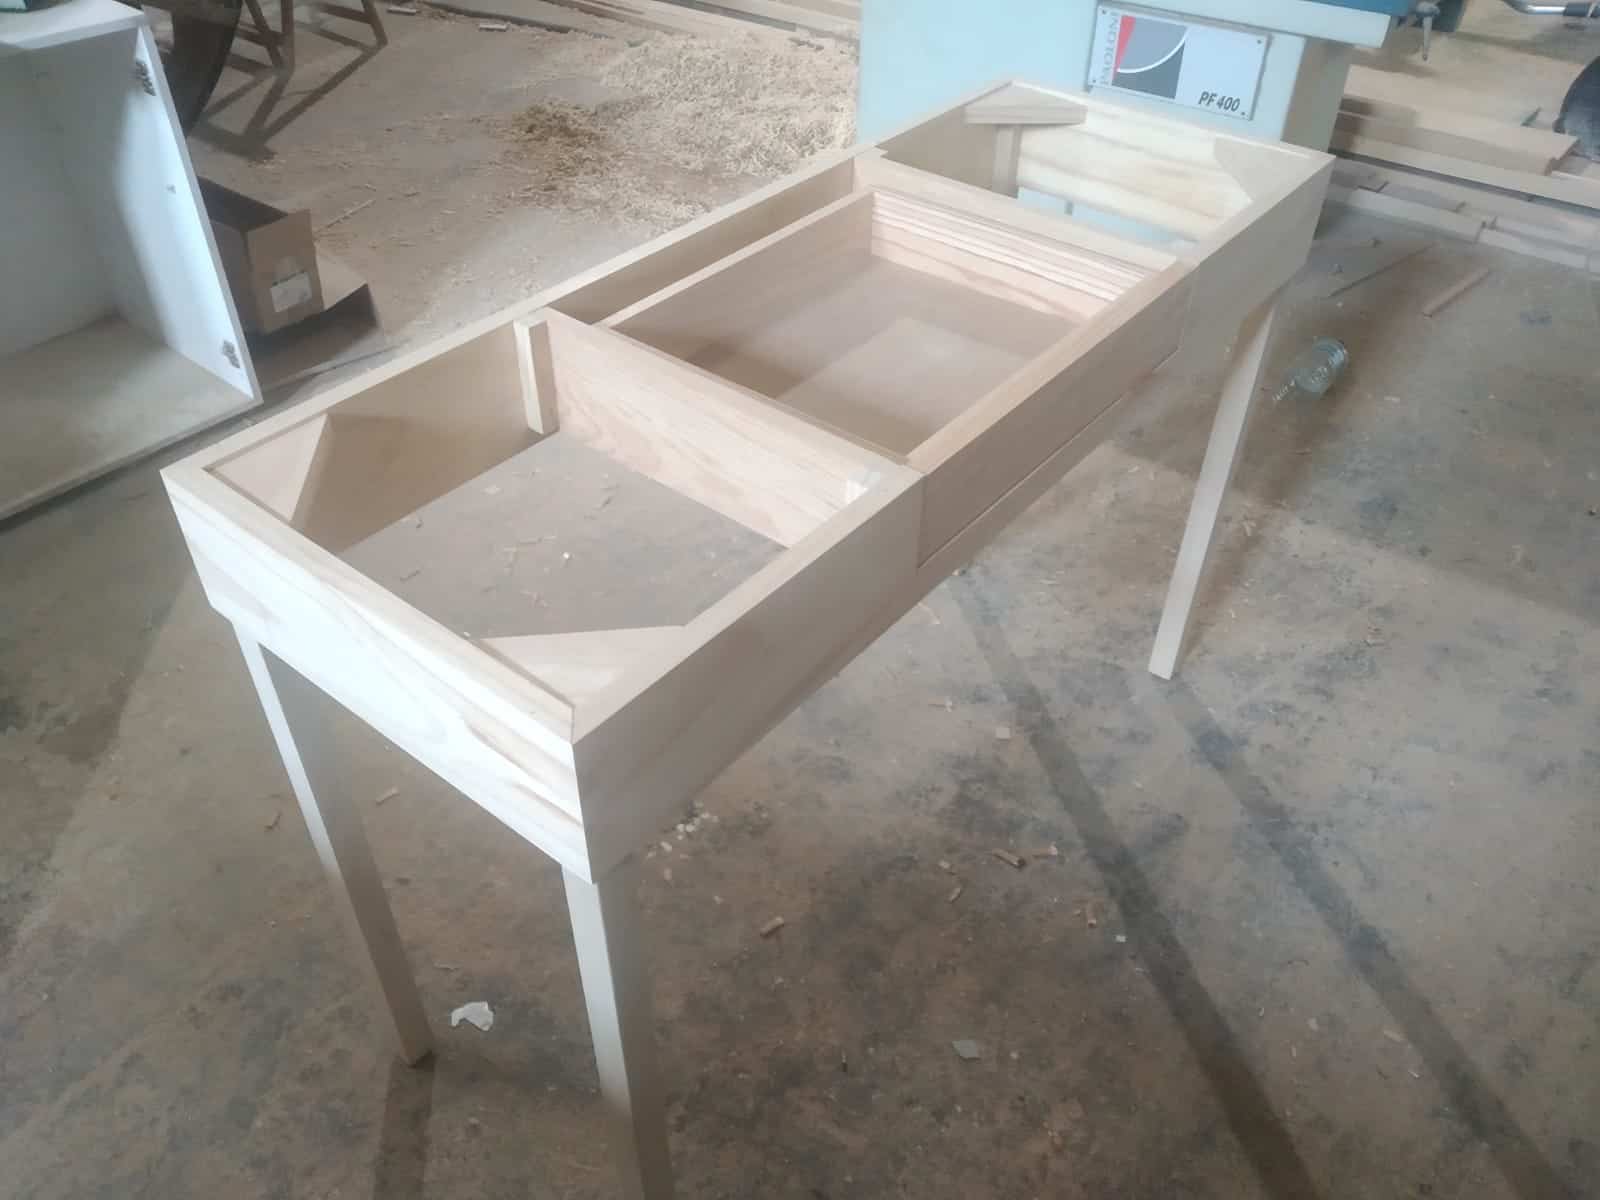 Trabajos carpintero: Construccion de una mesa a medida con cajón para cocina.